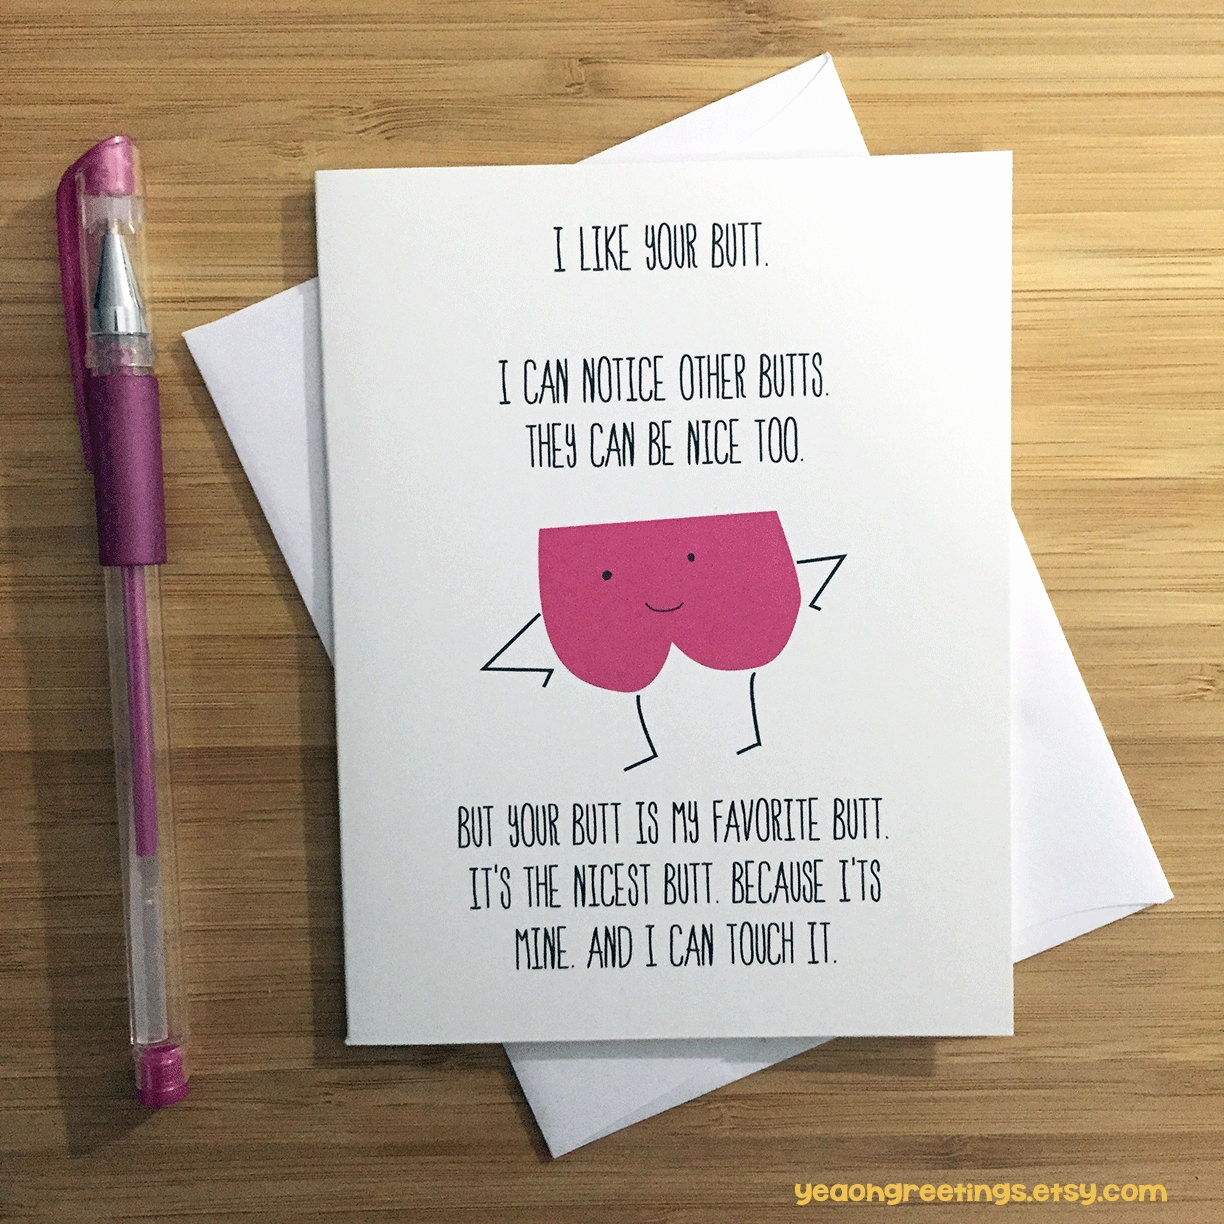 Wife Birthday Card Ideas Ideas For Wife Birthday Card Inspirational Gift For Wife Birthday